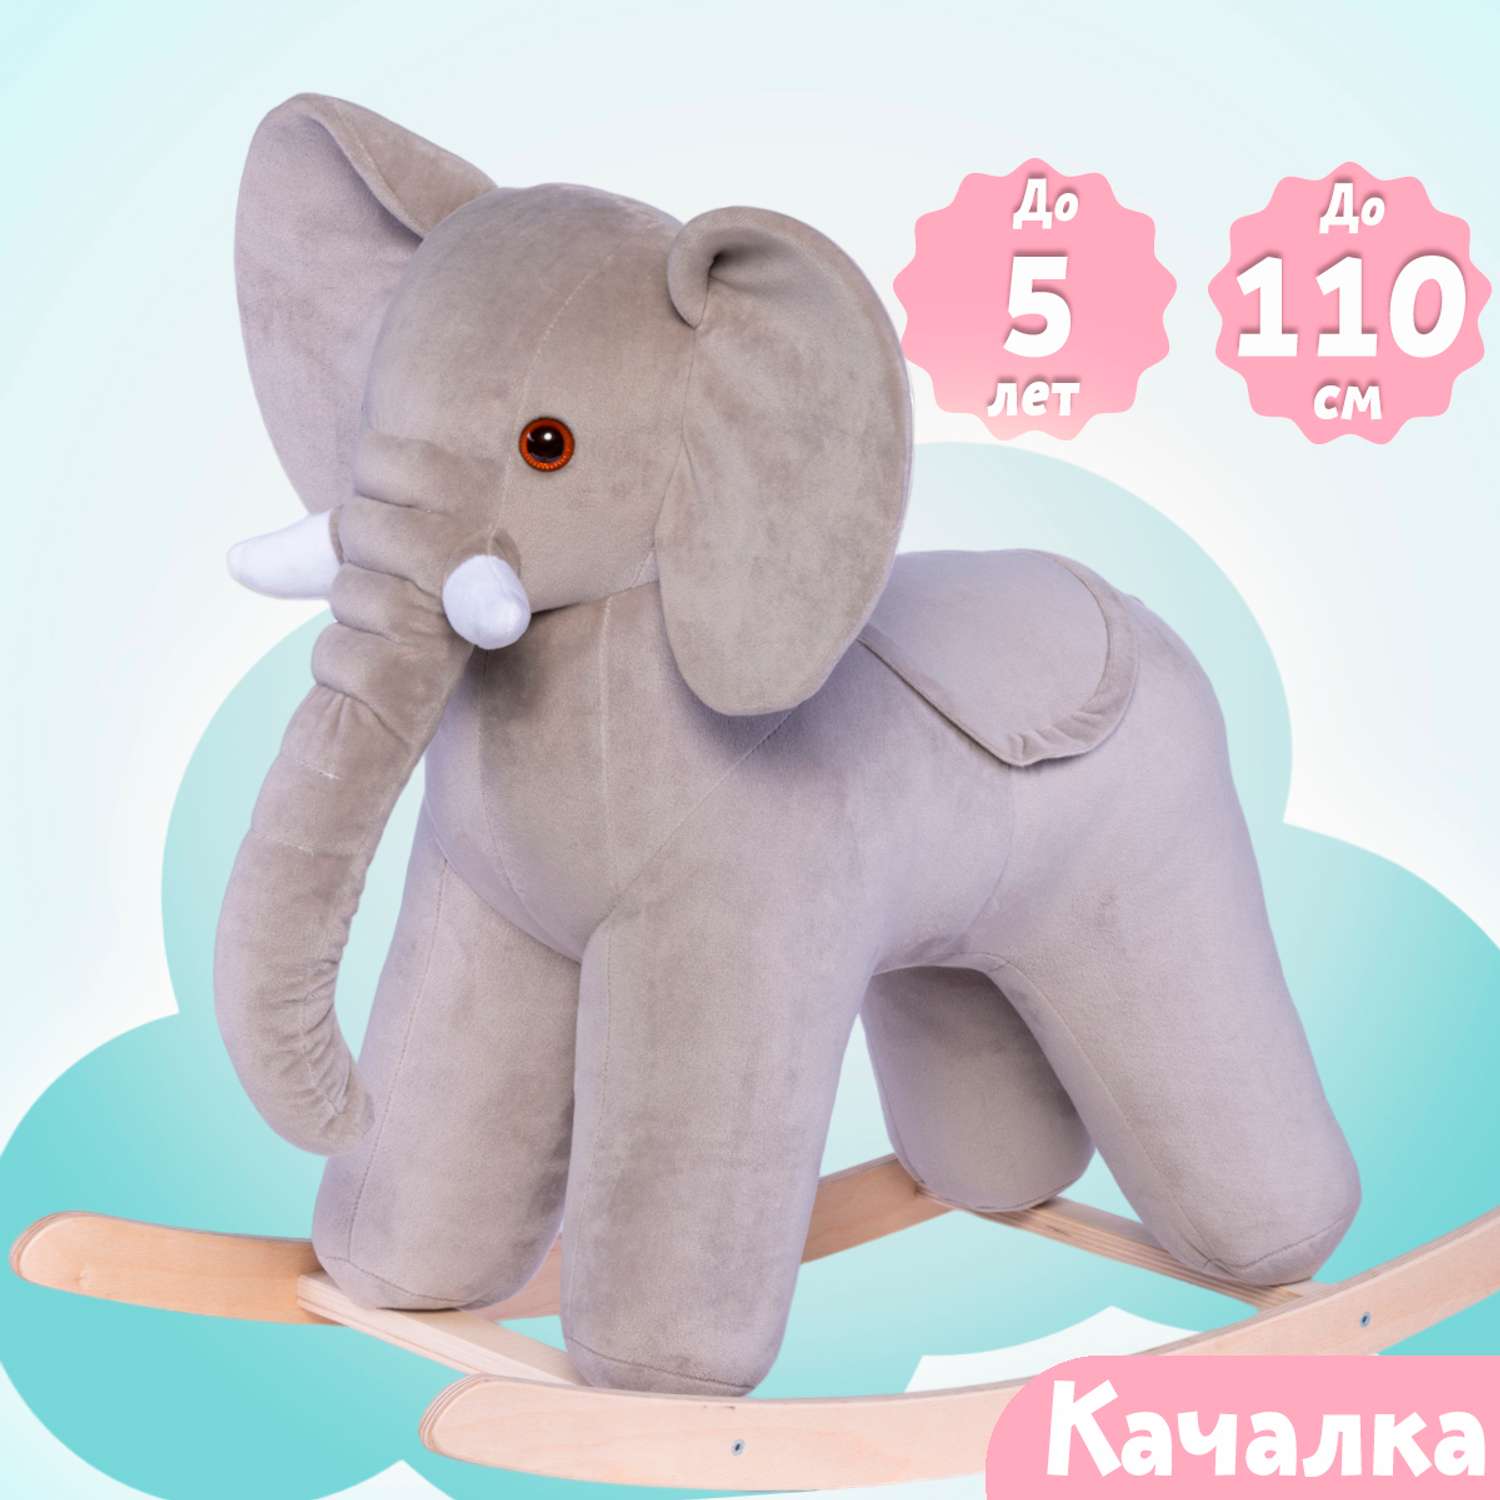 Качалка Нижегородская игрушка Слон серый - фото 4